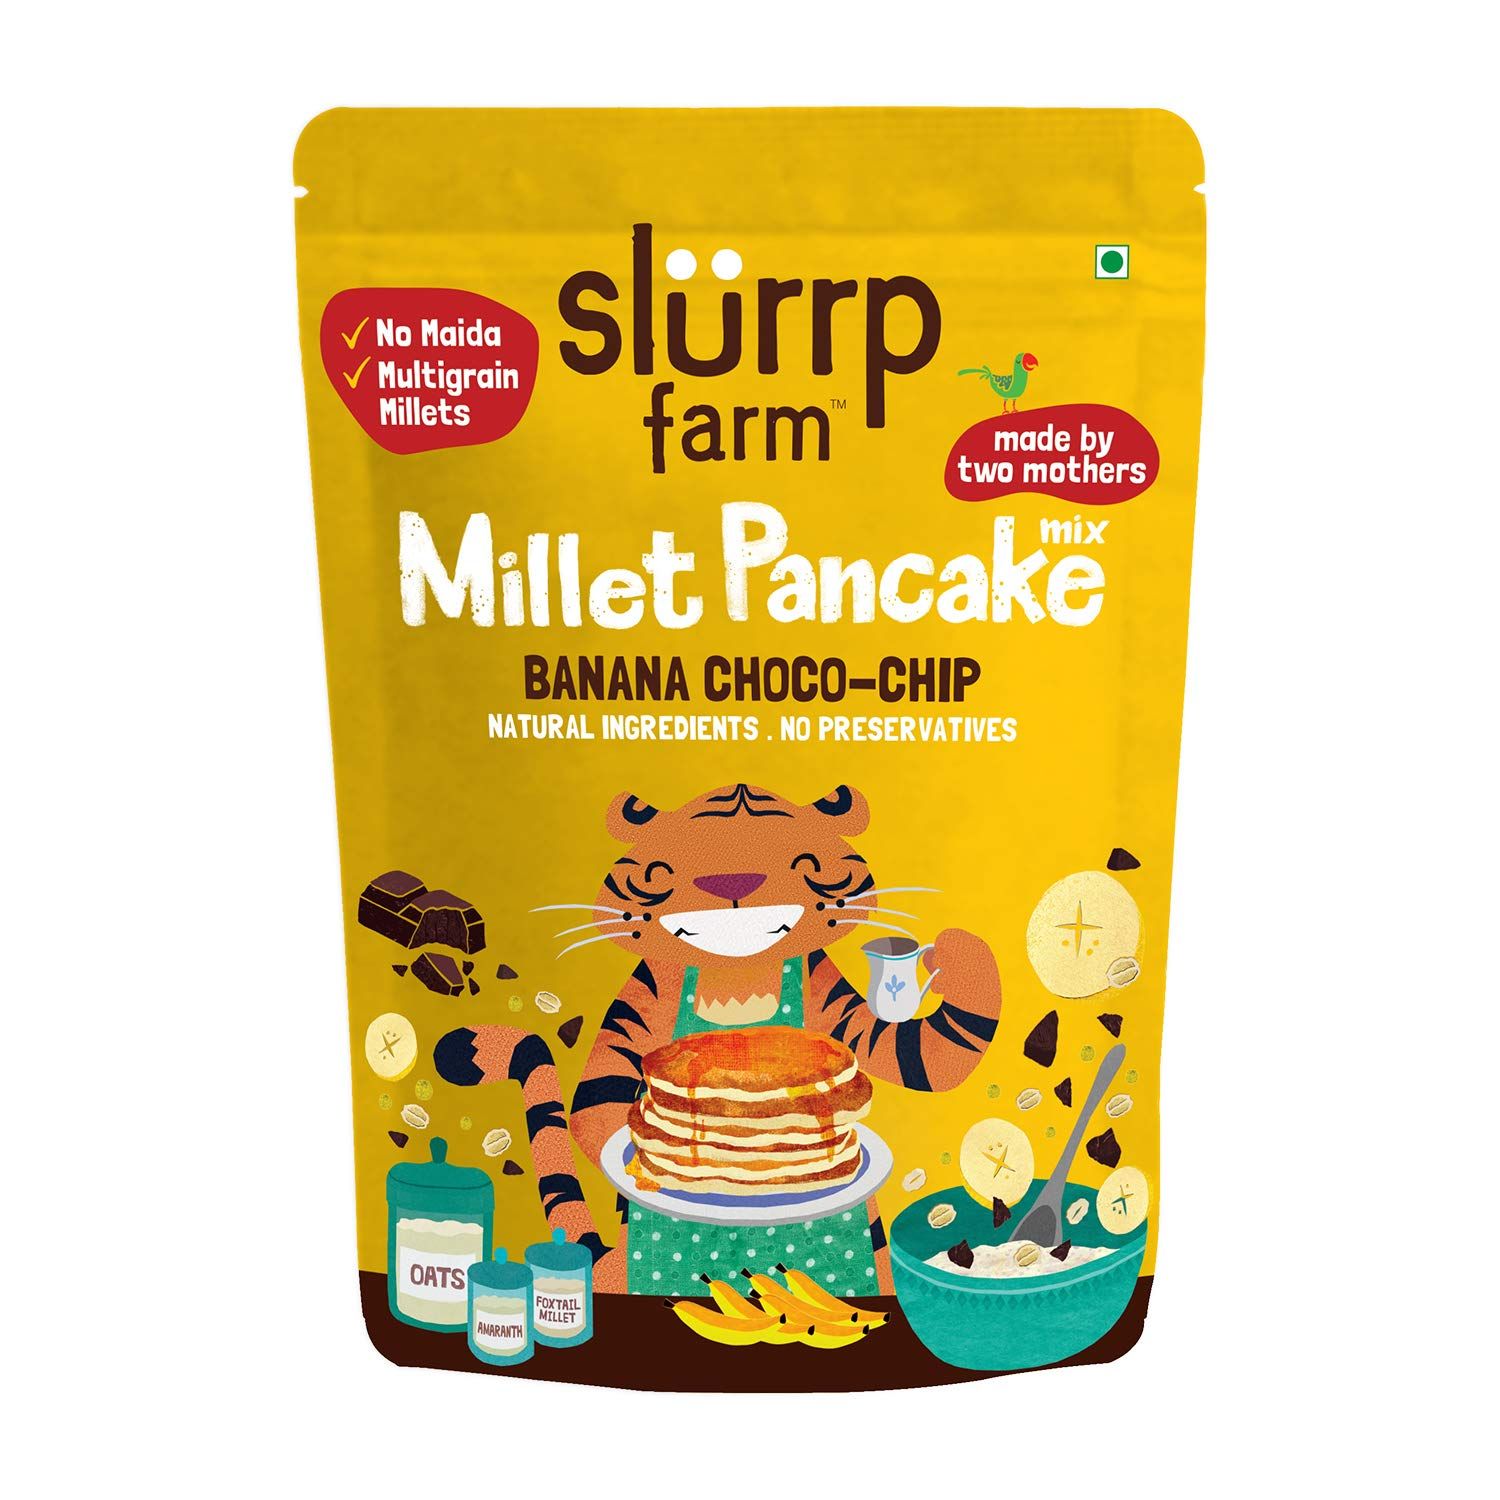 Slurrp Farm Millet Banana Choco Chip Pancake Image